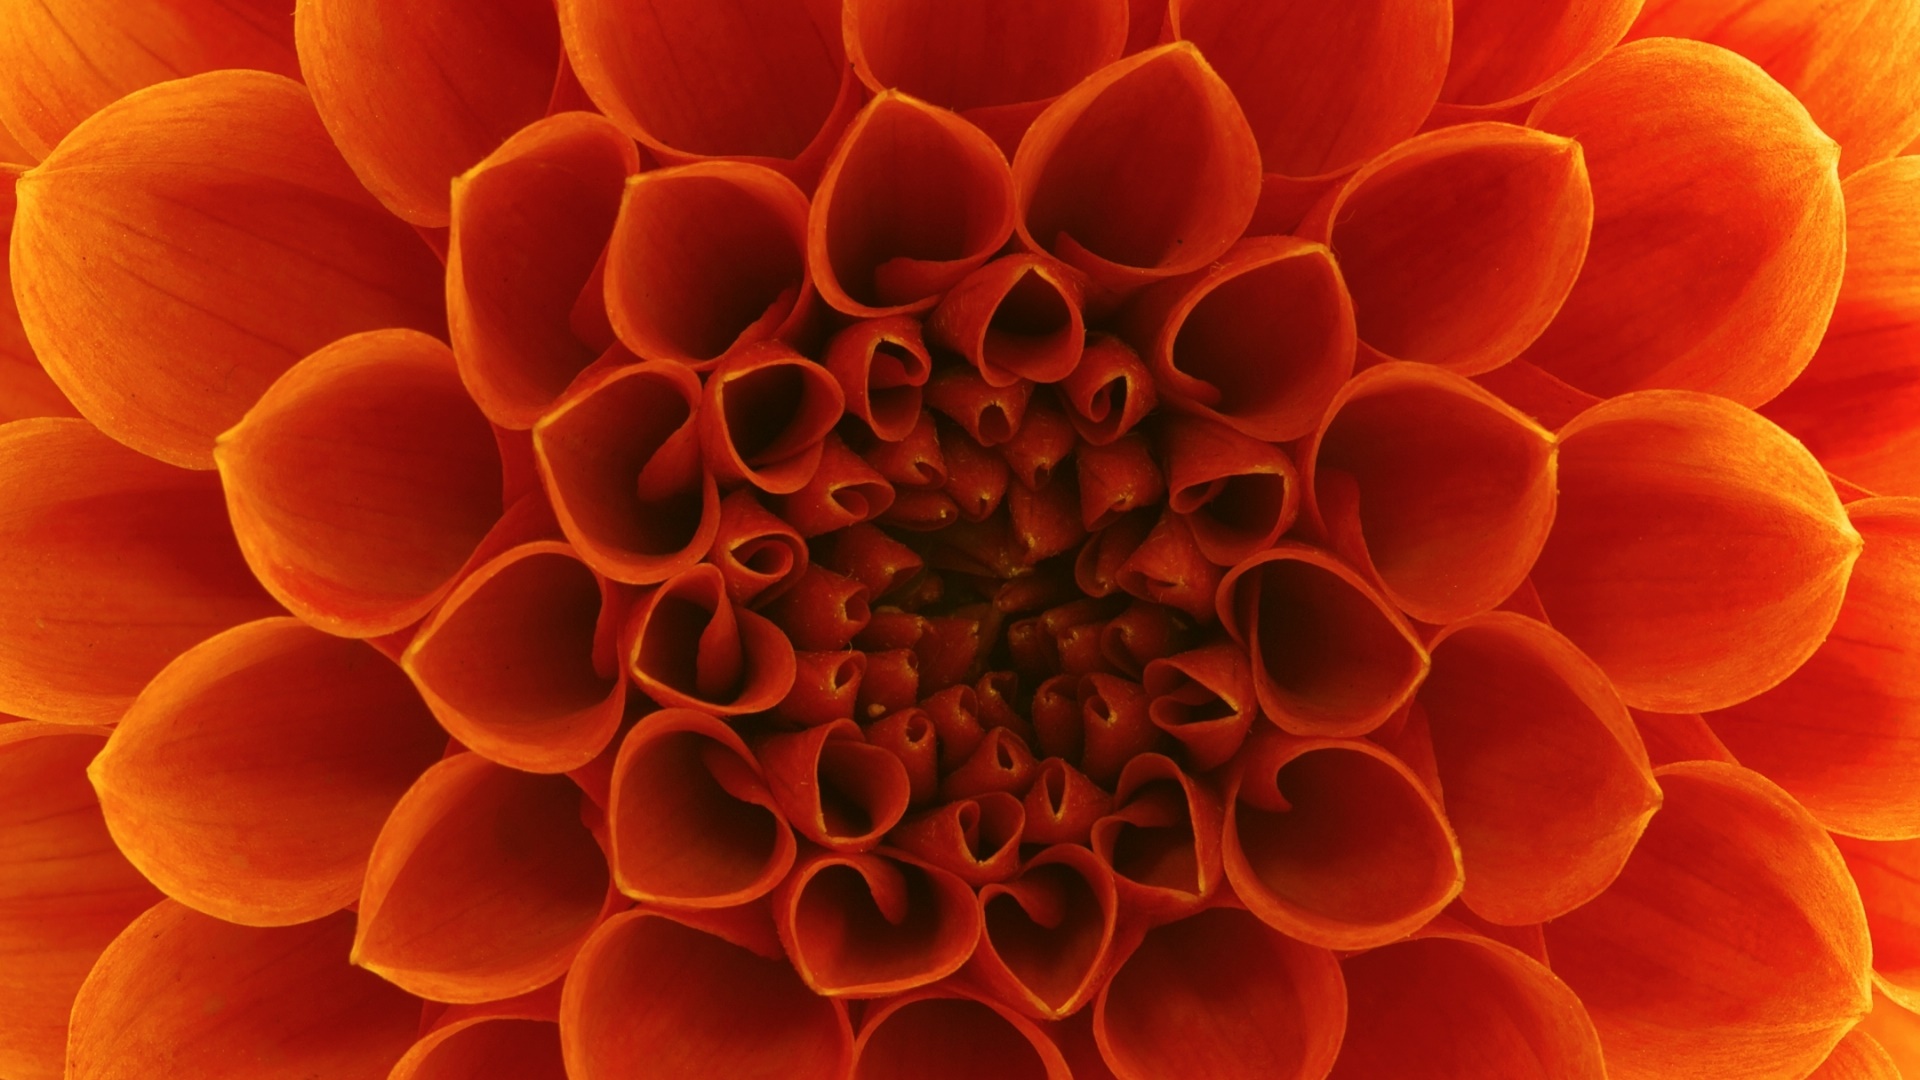 Flower Close Up Orange Flower 1920x1080